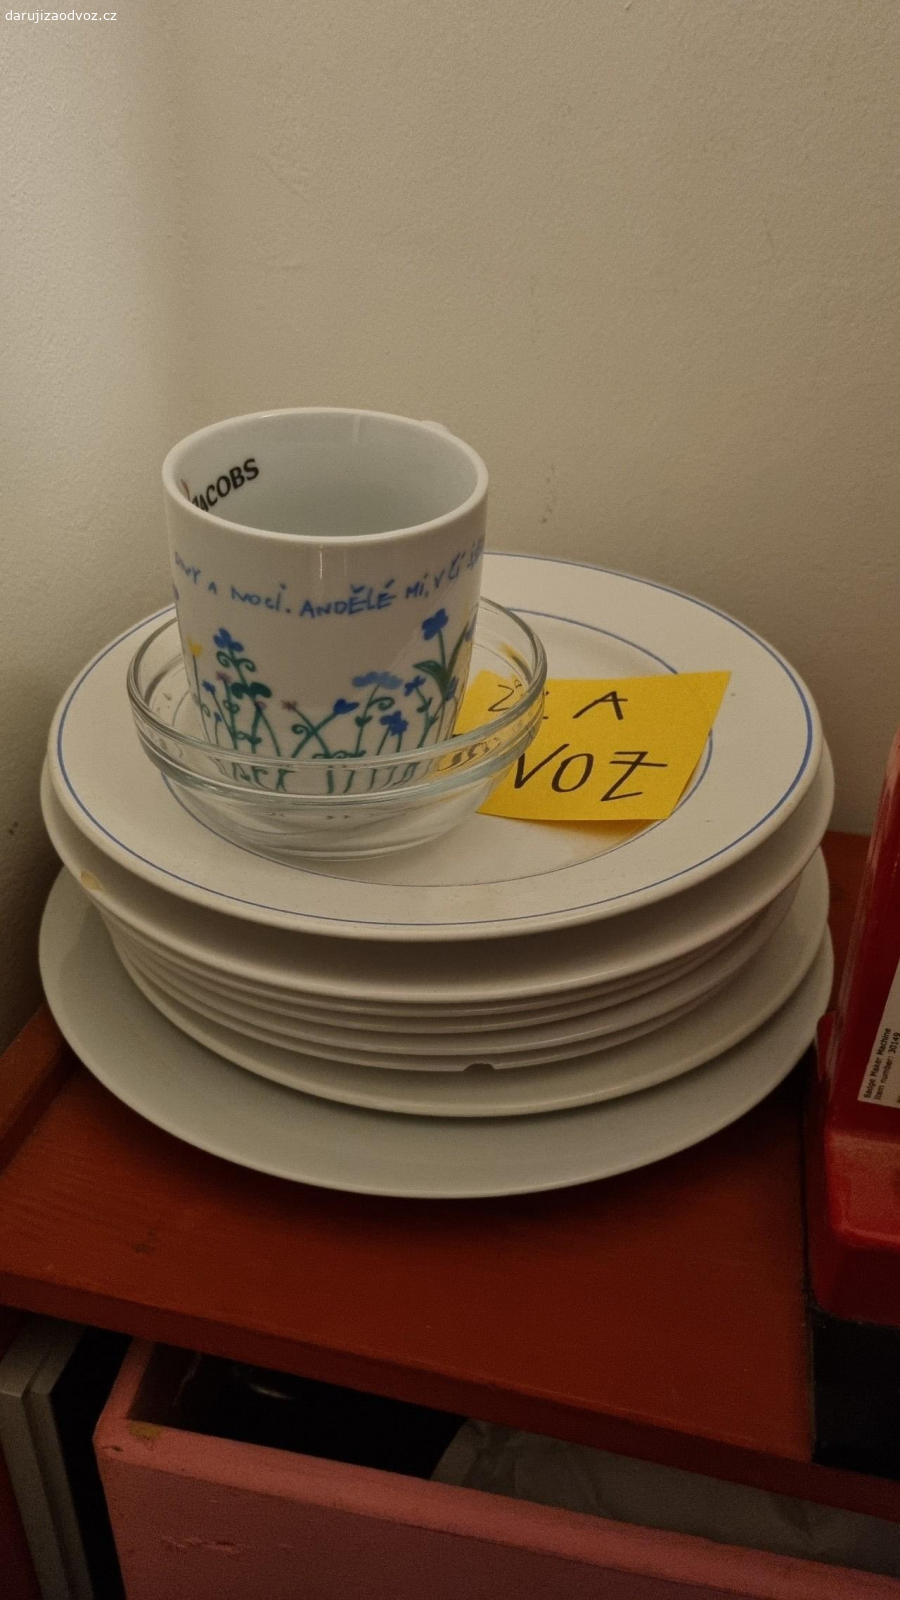 Sada nádobí. 17x talíře hluboké, lehce otlučené
8x talíře klasické
1x hrneček
1x miska

hluboké talíře jsou velice krasne, i přes otlučení

preferuji odběr všeho jednou osobou